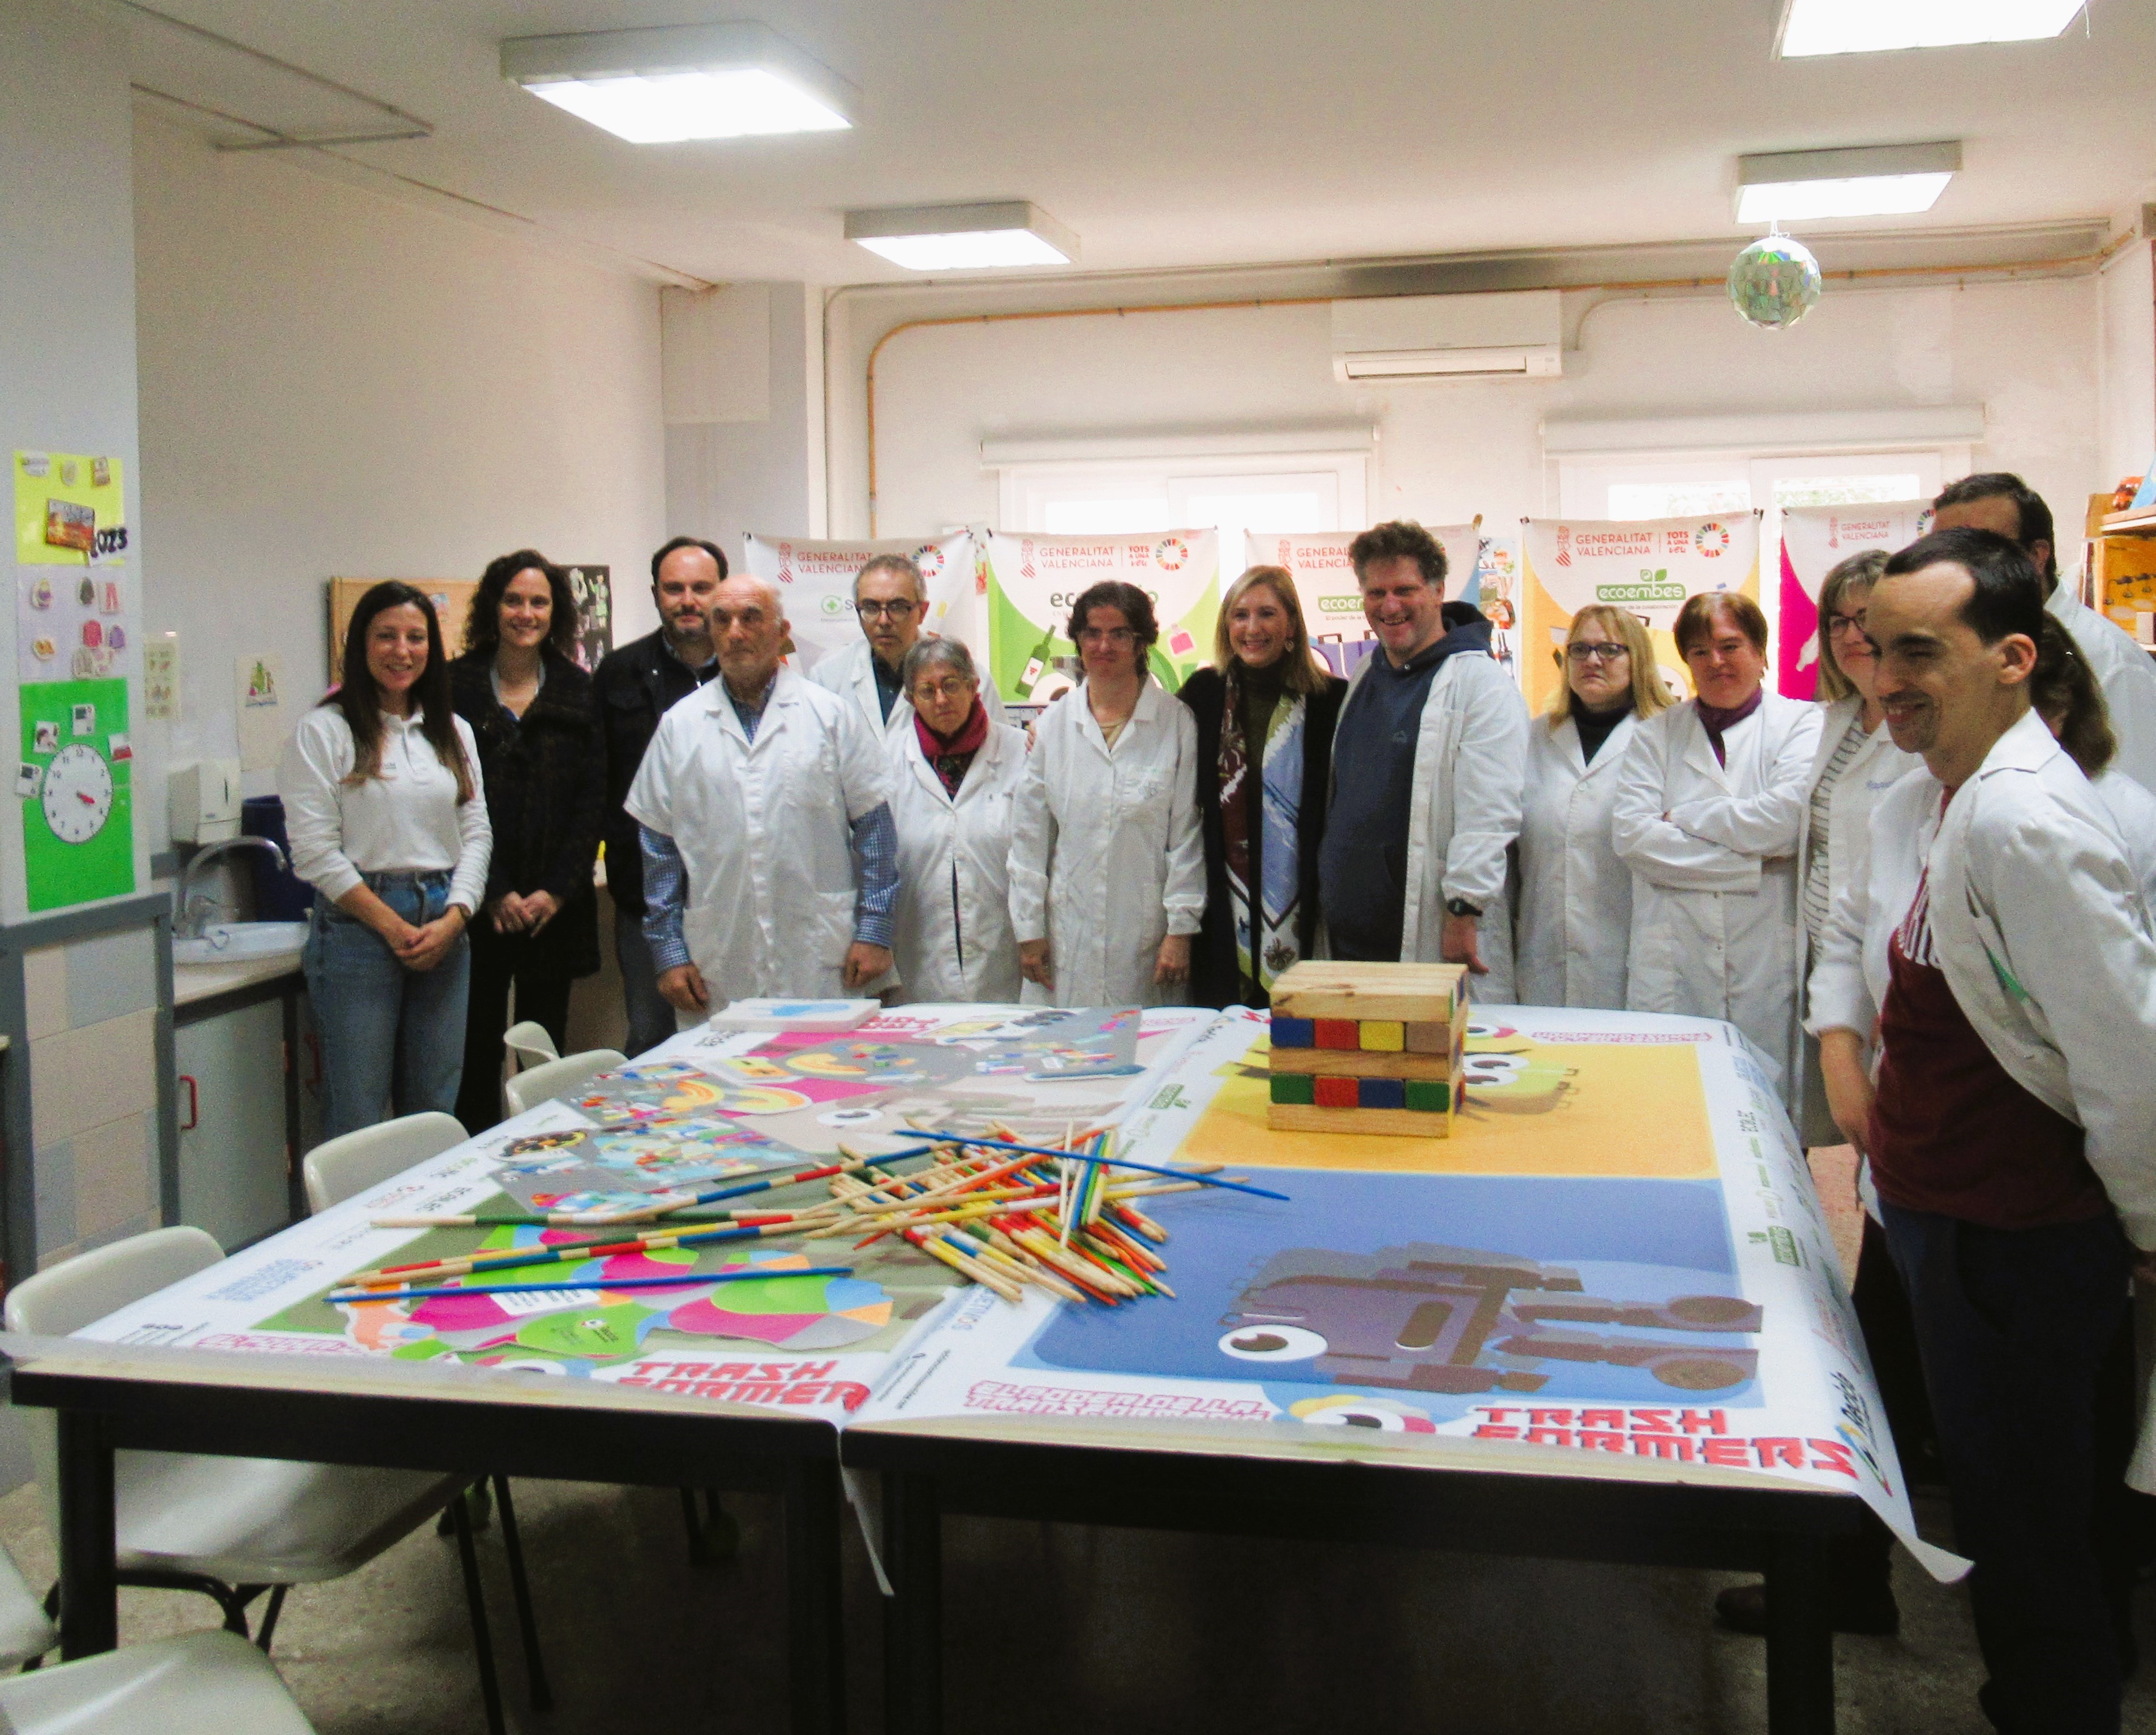 La consellera de Medi Ambient, Salomé Pradas, i el director general de Qualitat i Educació Ambiental, Jorge Blanco, i responsables de l'empresa Ecoembes han visitat el centre ocupacional Rafalafena de l'IVASS a Castelló